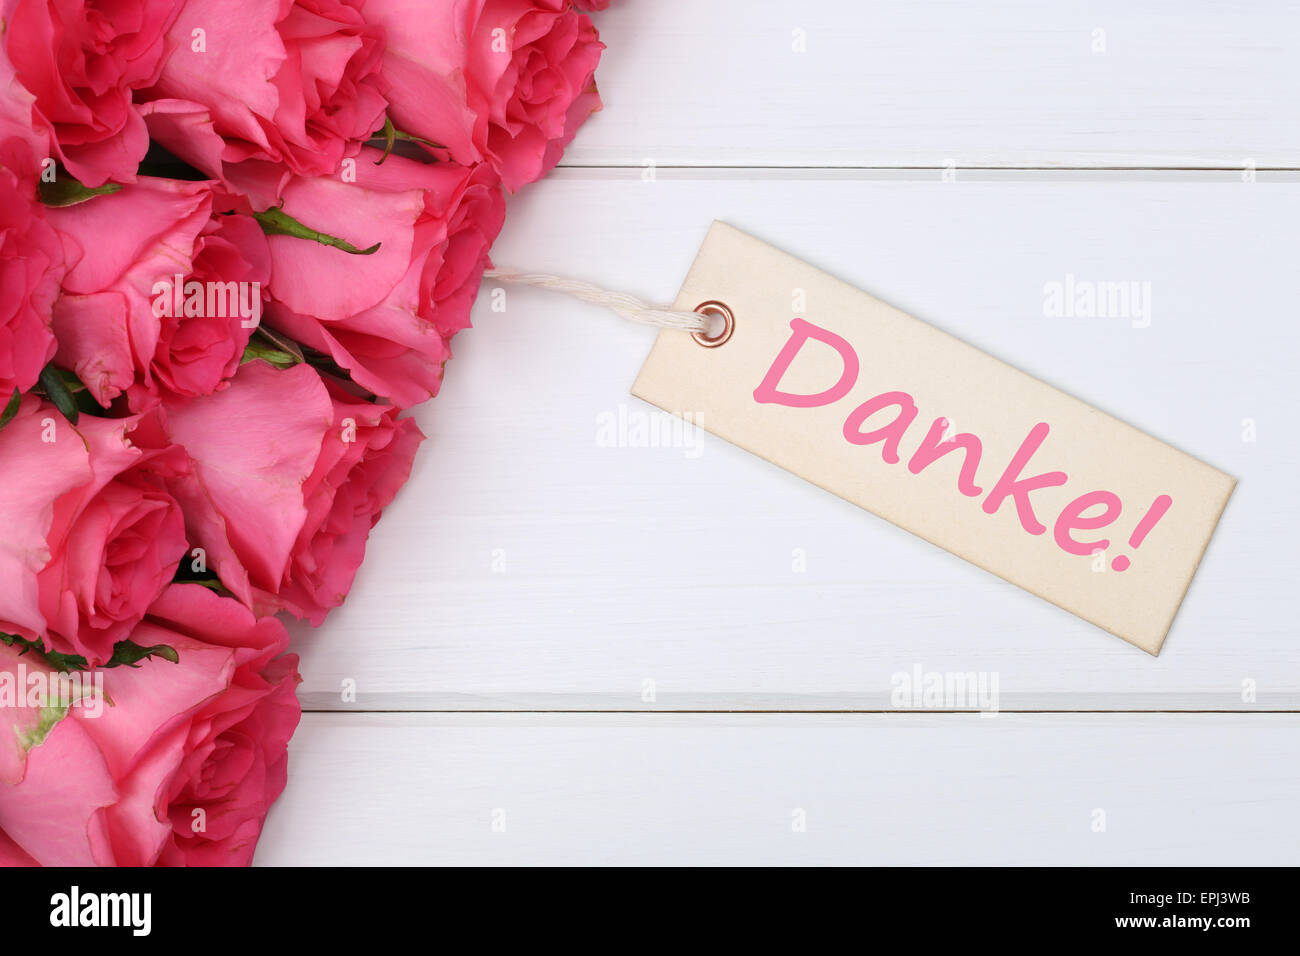 Danke mit Rosen Blumen zum Muttertag oder Valentinstag Stock Photo - Alamy